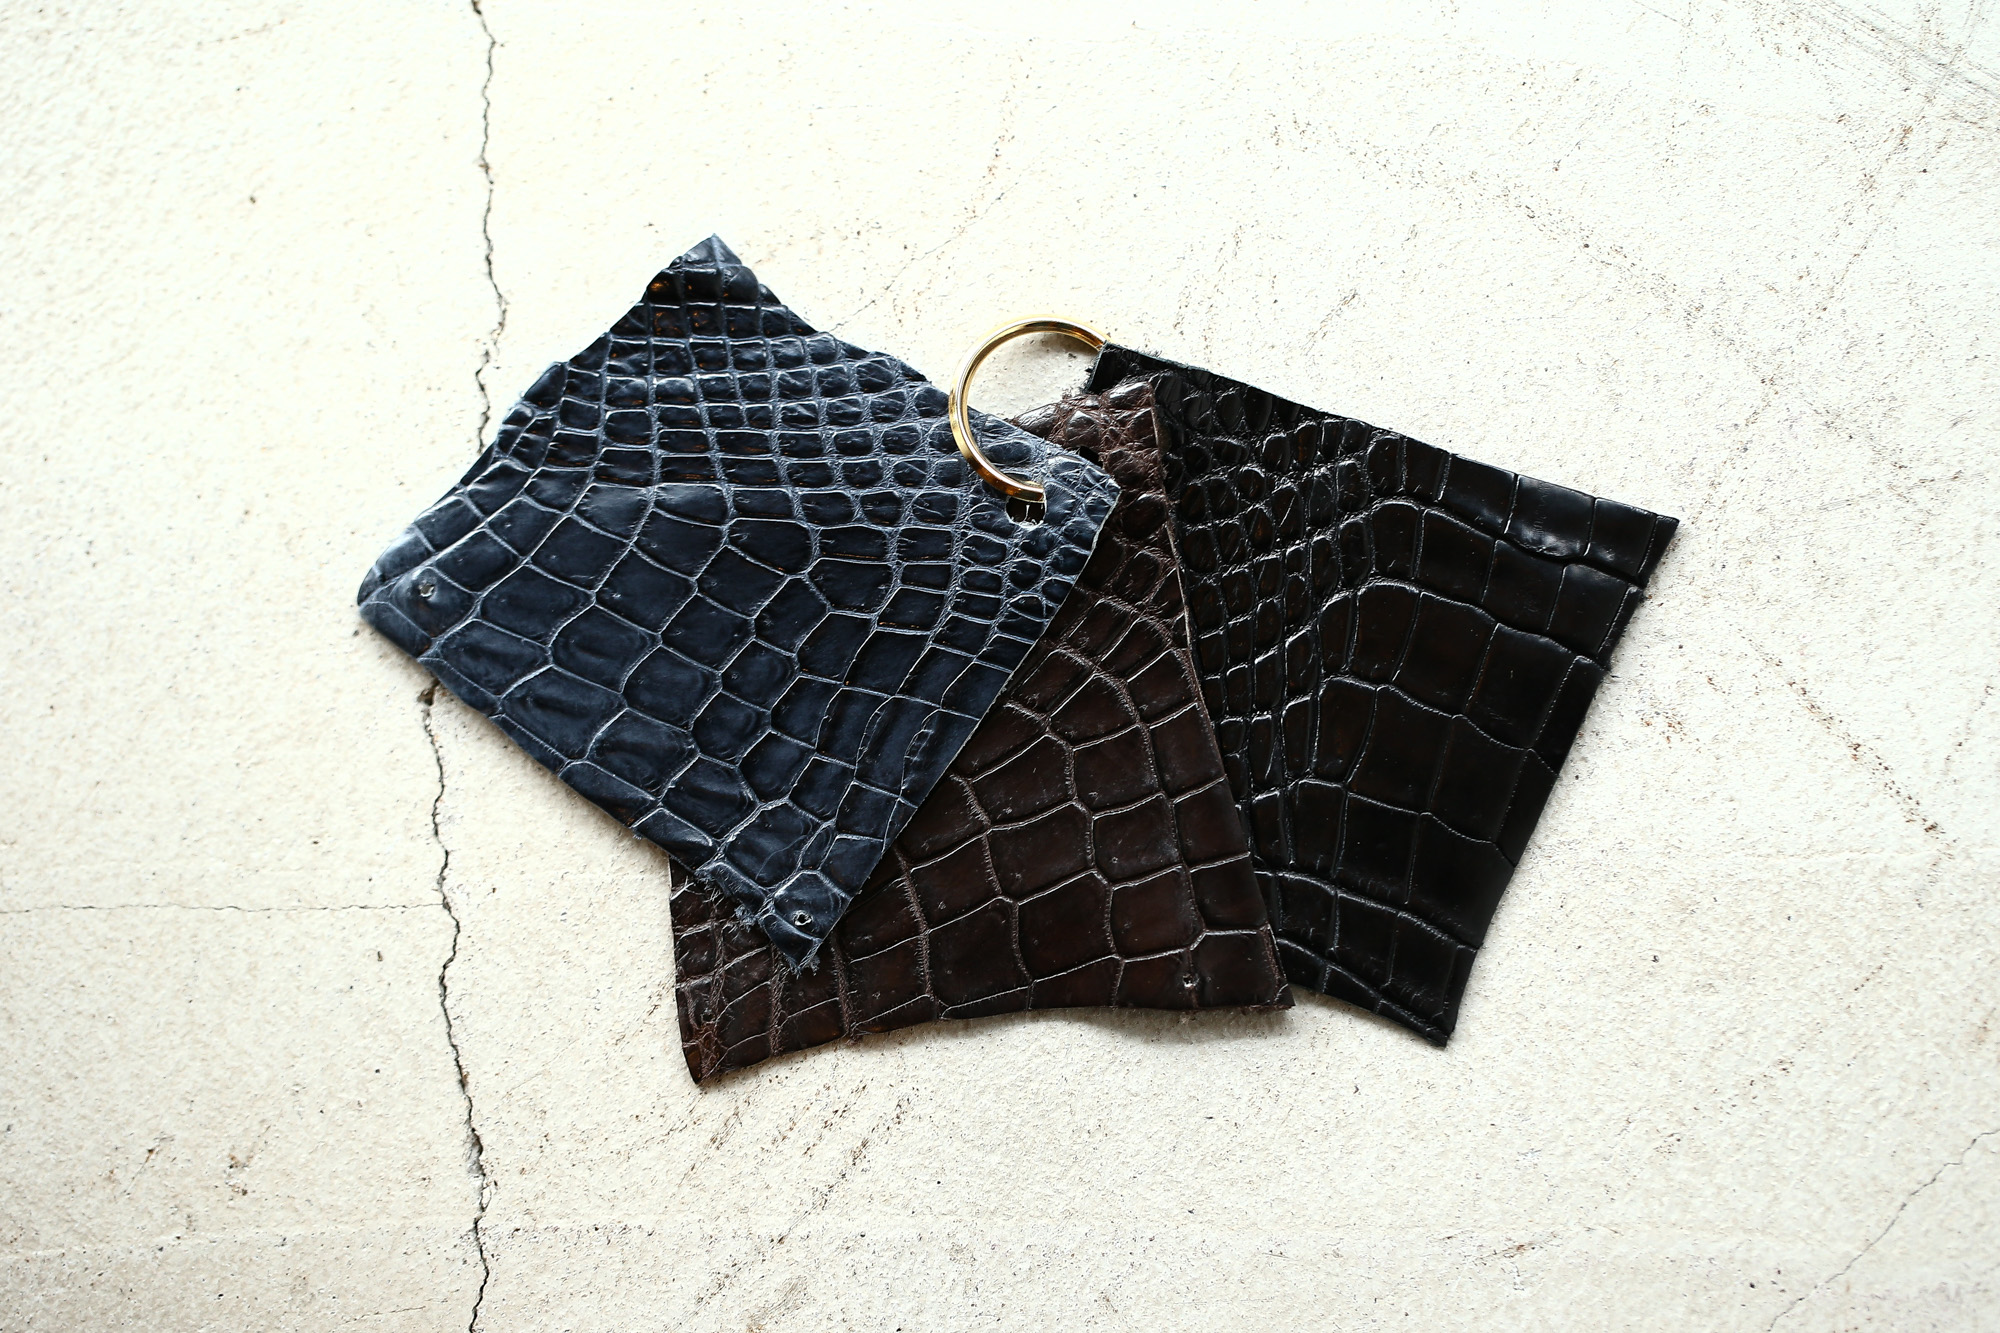 Cisei × 山本製鞄 (シセイ × 山本製鞄) Crocodile Tote Bag Medium (クロコダイル トートバッグ ミディアム) Large Crocodile leather (ワニ革) Nile Crocodile Leather (ワニ革) ナイル クロコダイル トート バッグ BLACK(ブラック),NAVY(ネイビー),BROWN(ブラウン) Made in Japan (日本製) cisei yamamotoseiho 